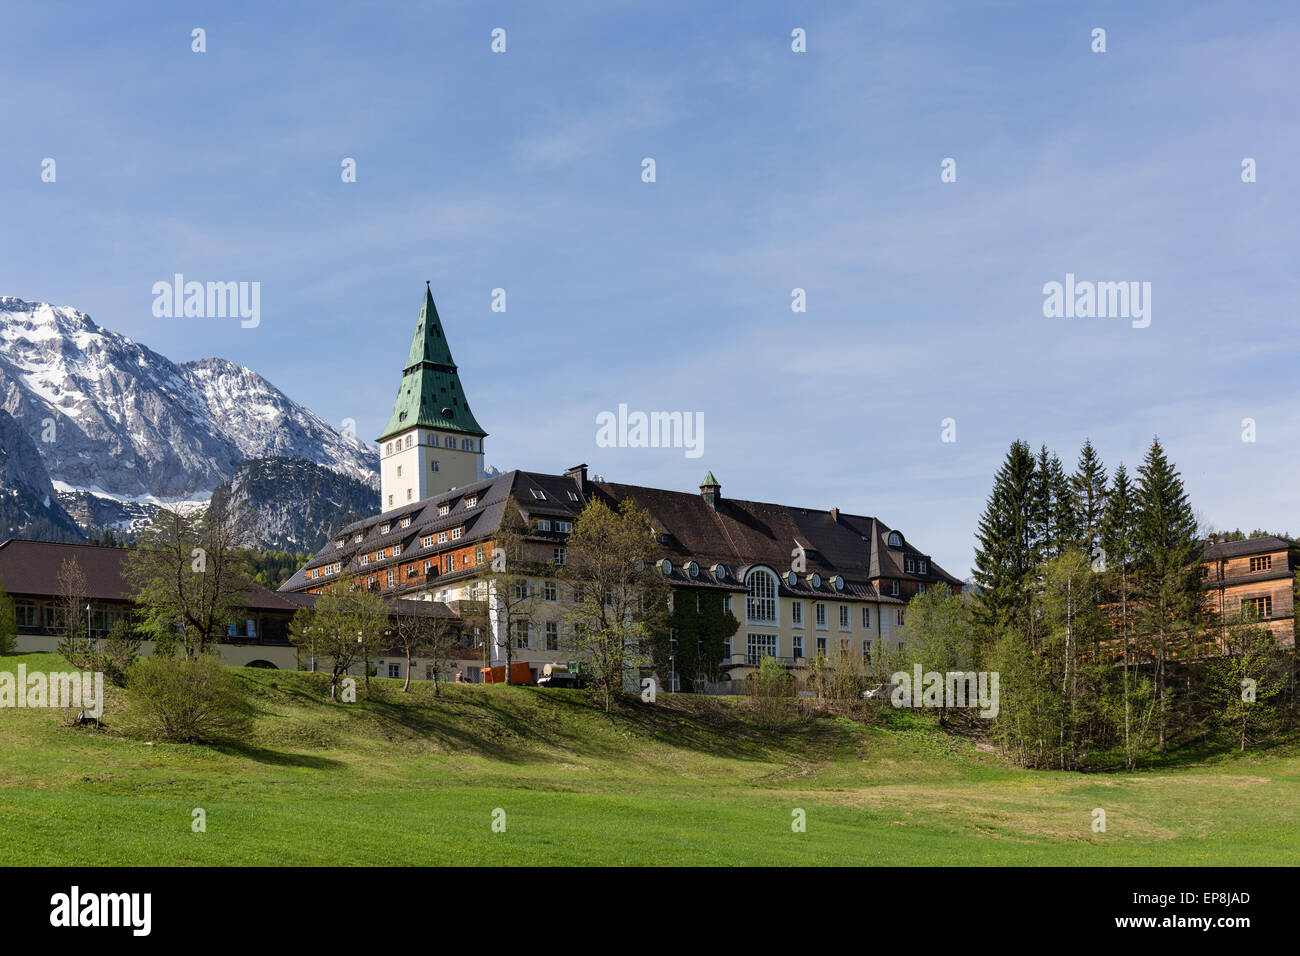 Schloss Elmau castle hotel, lieu de la sommet du G7 de 2015, Klais, du Wetterstein, Werdenfelser Land, Haute-Bavière Banque D'Images